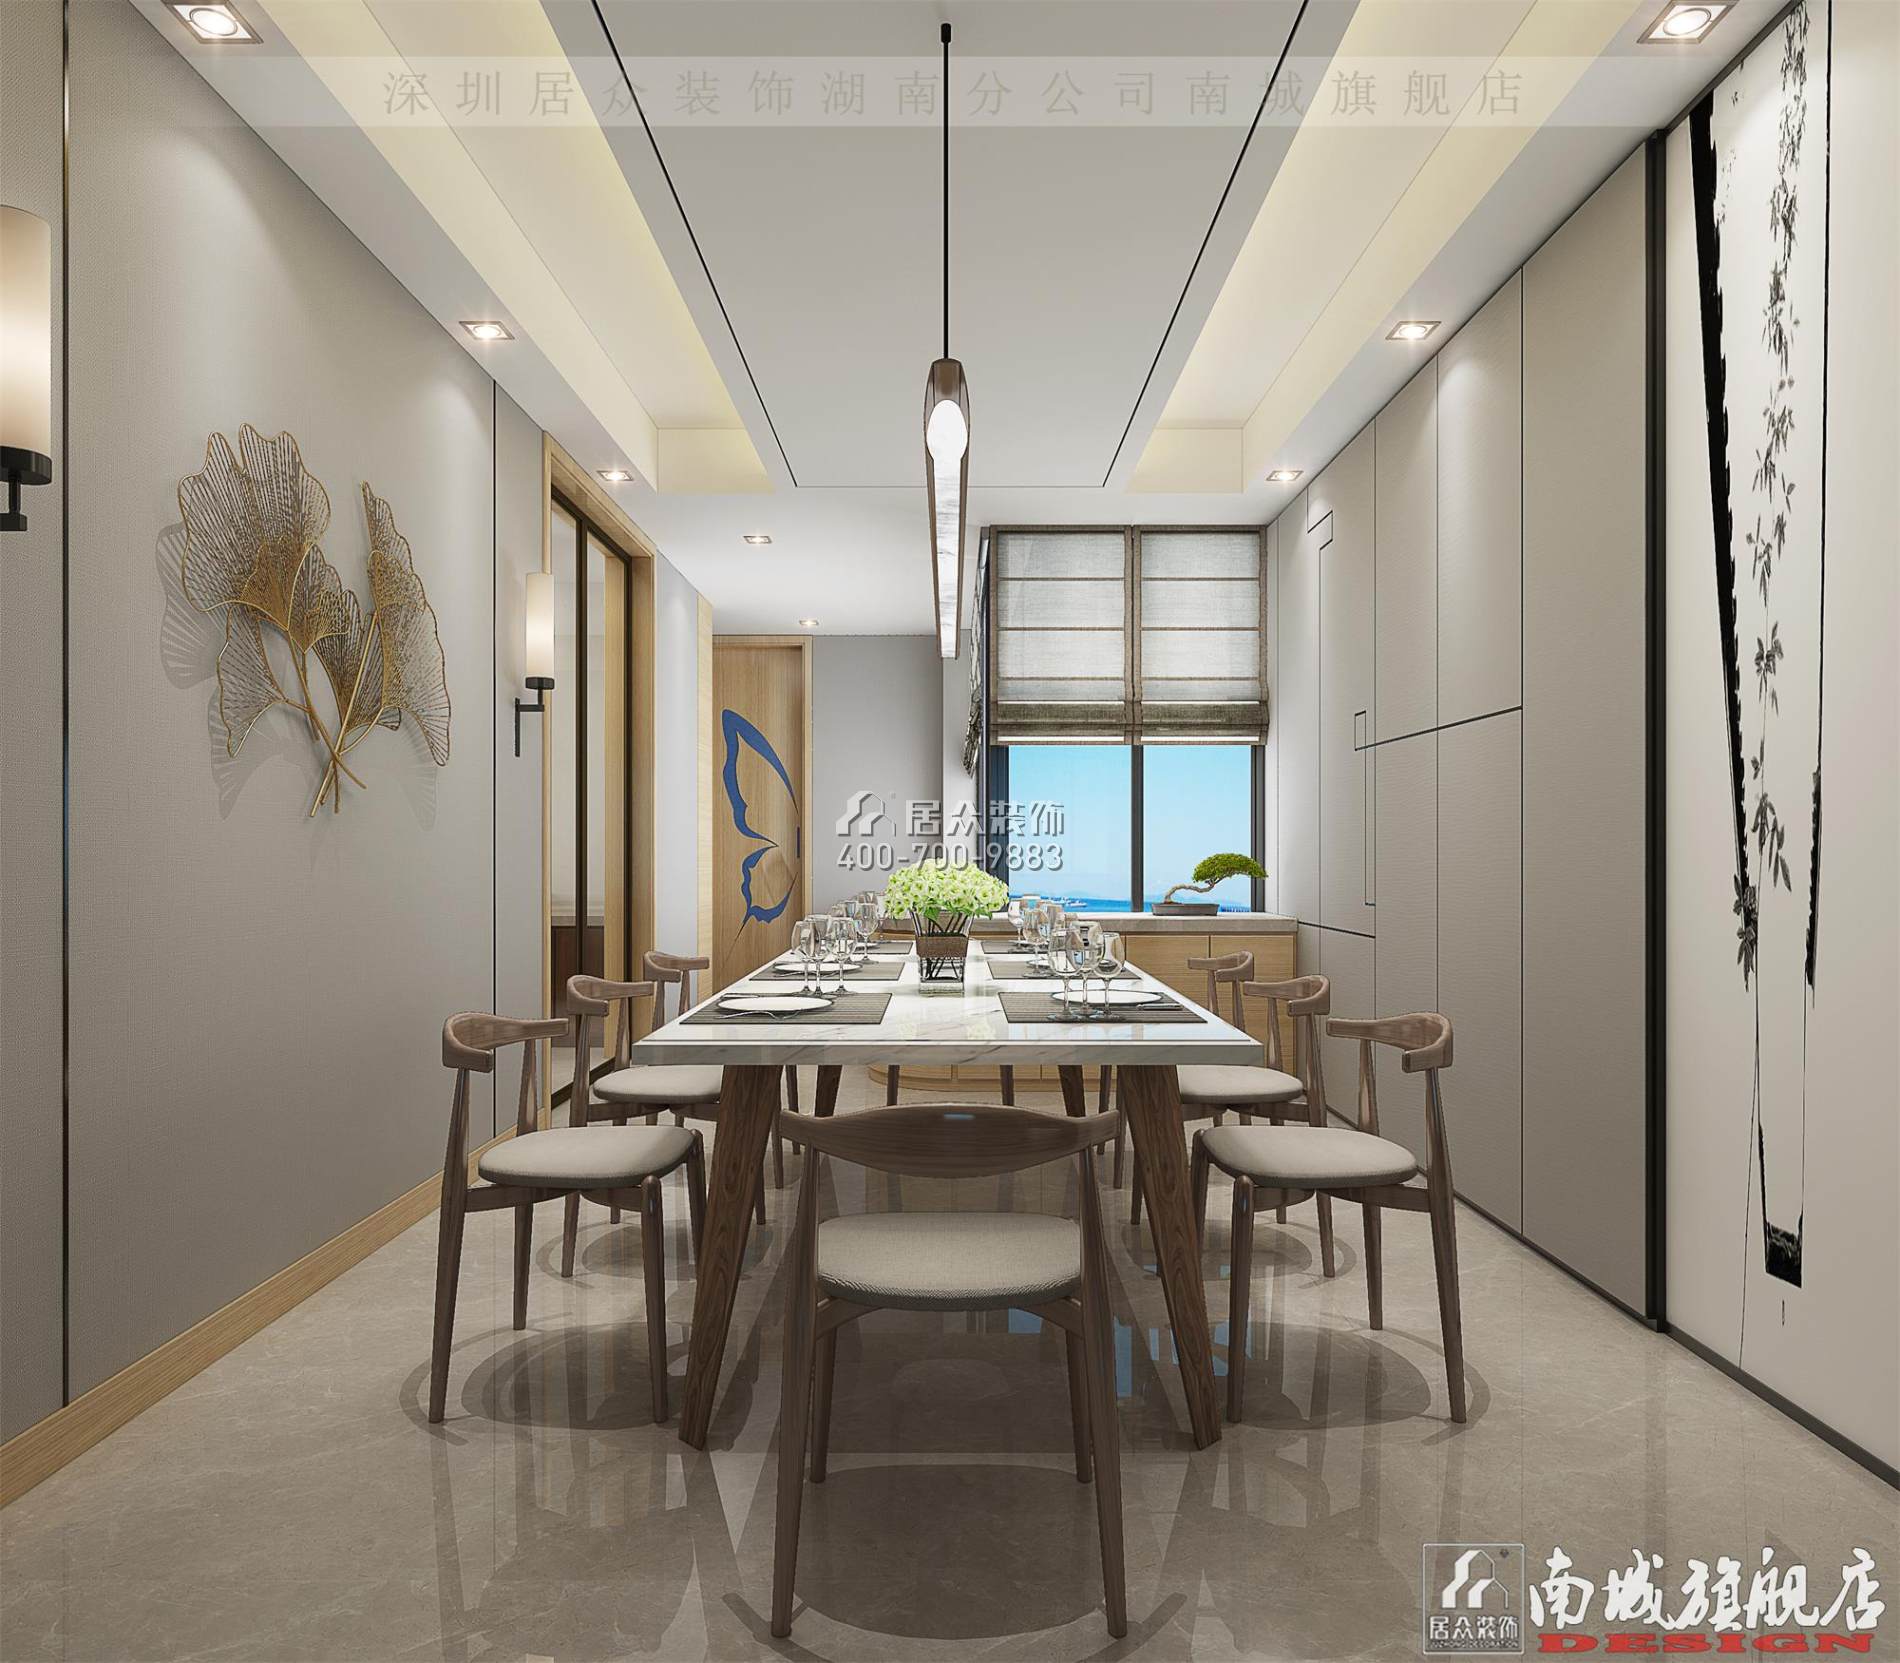 中建江山壹號232平方米中式風格平層戶型餐廳裝修效果圖